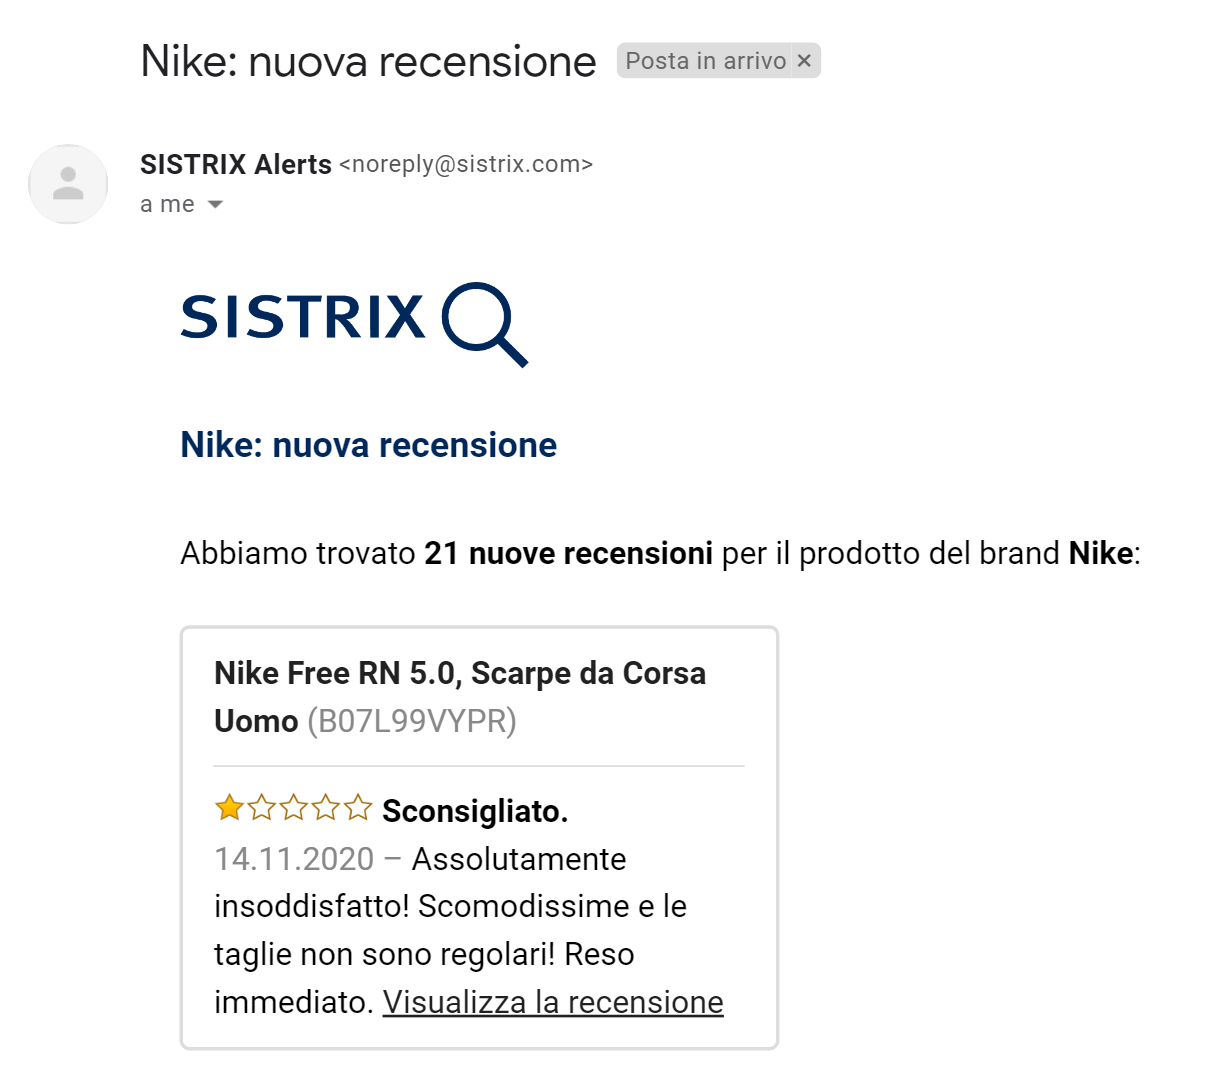 Esempio di email relativa alle nuove recensioni rilevate da SISTRIX